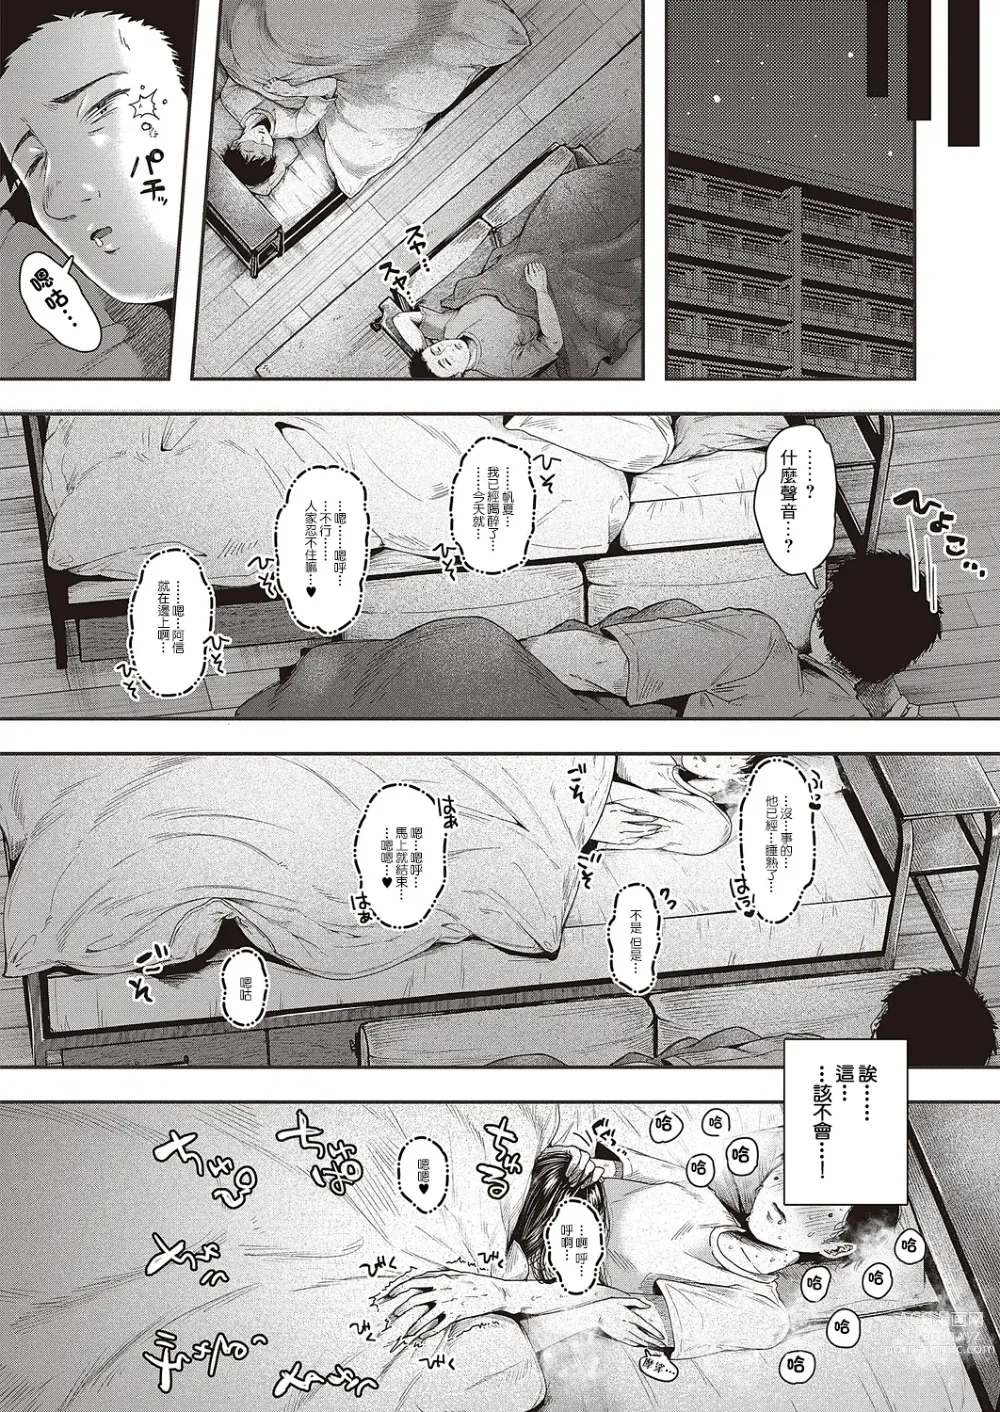 Page 4 of manga Shisen